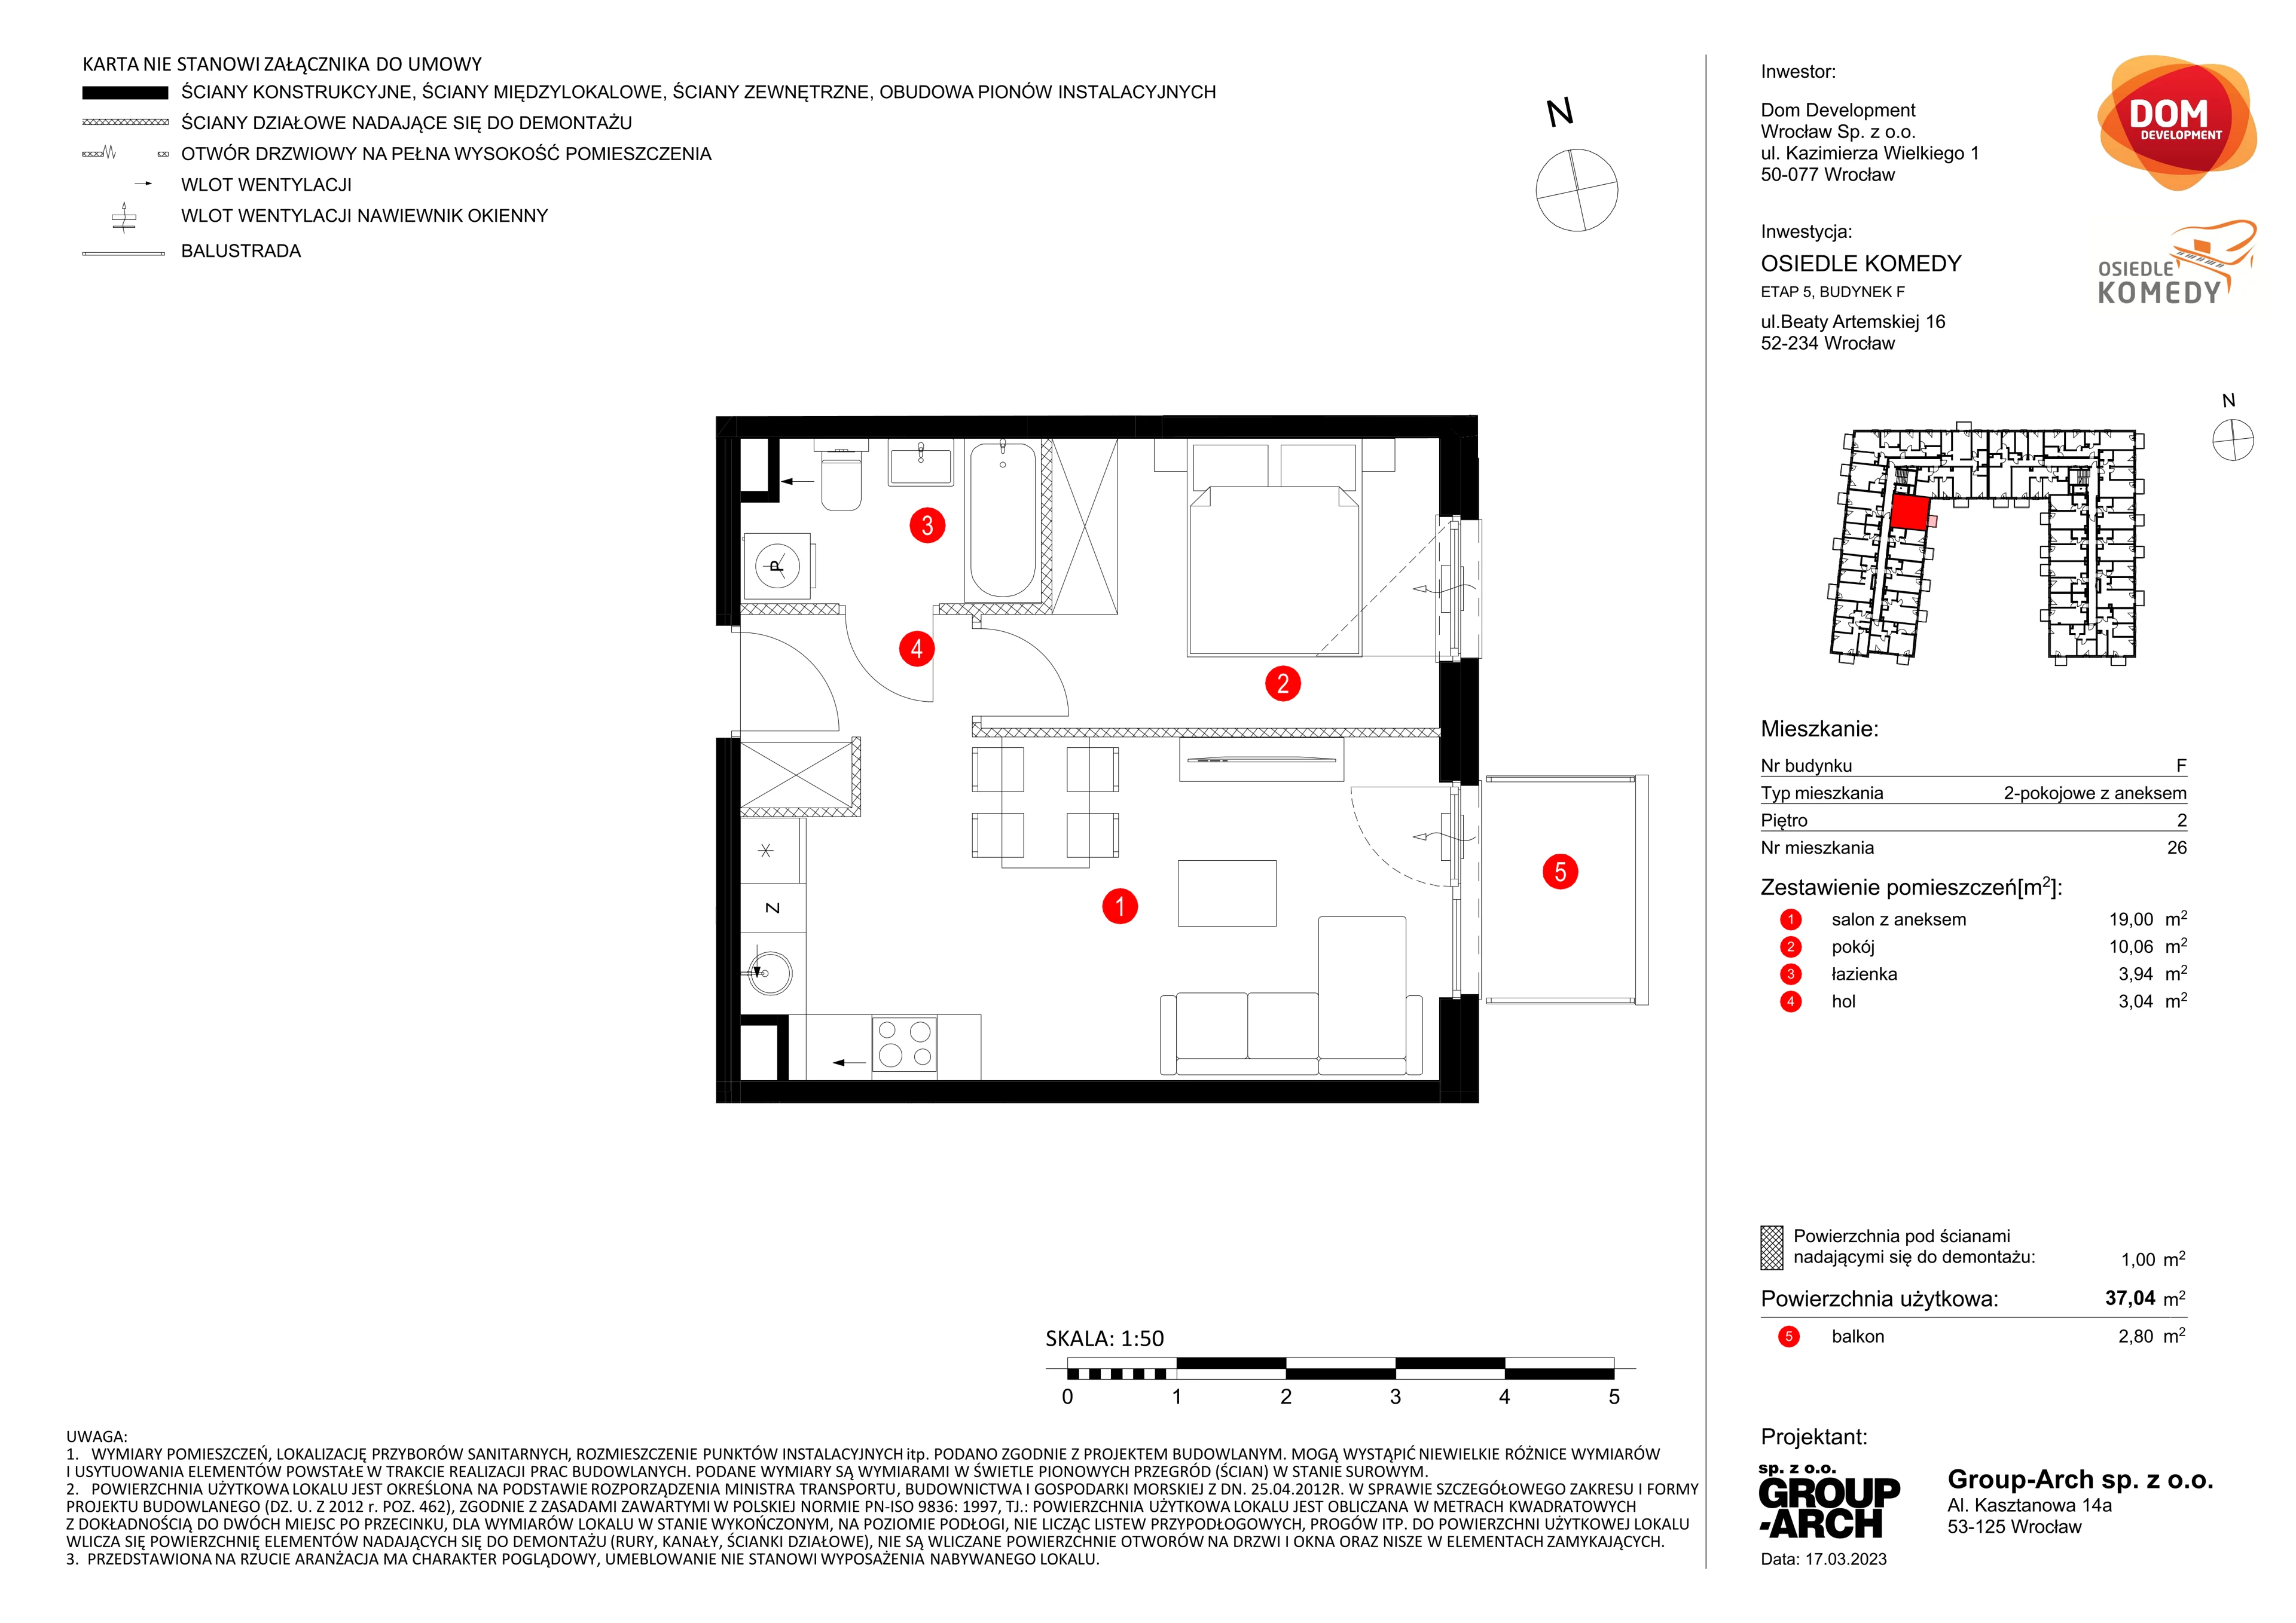 Mieszkanie 37,04 m², piętro 2, oferta nr F/26, Osiedle Komedy, Wrocław, Jagodno, Krzyki, ul. Komedy 1B